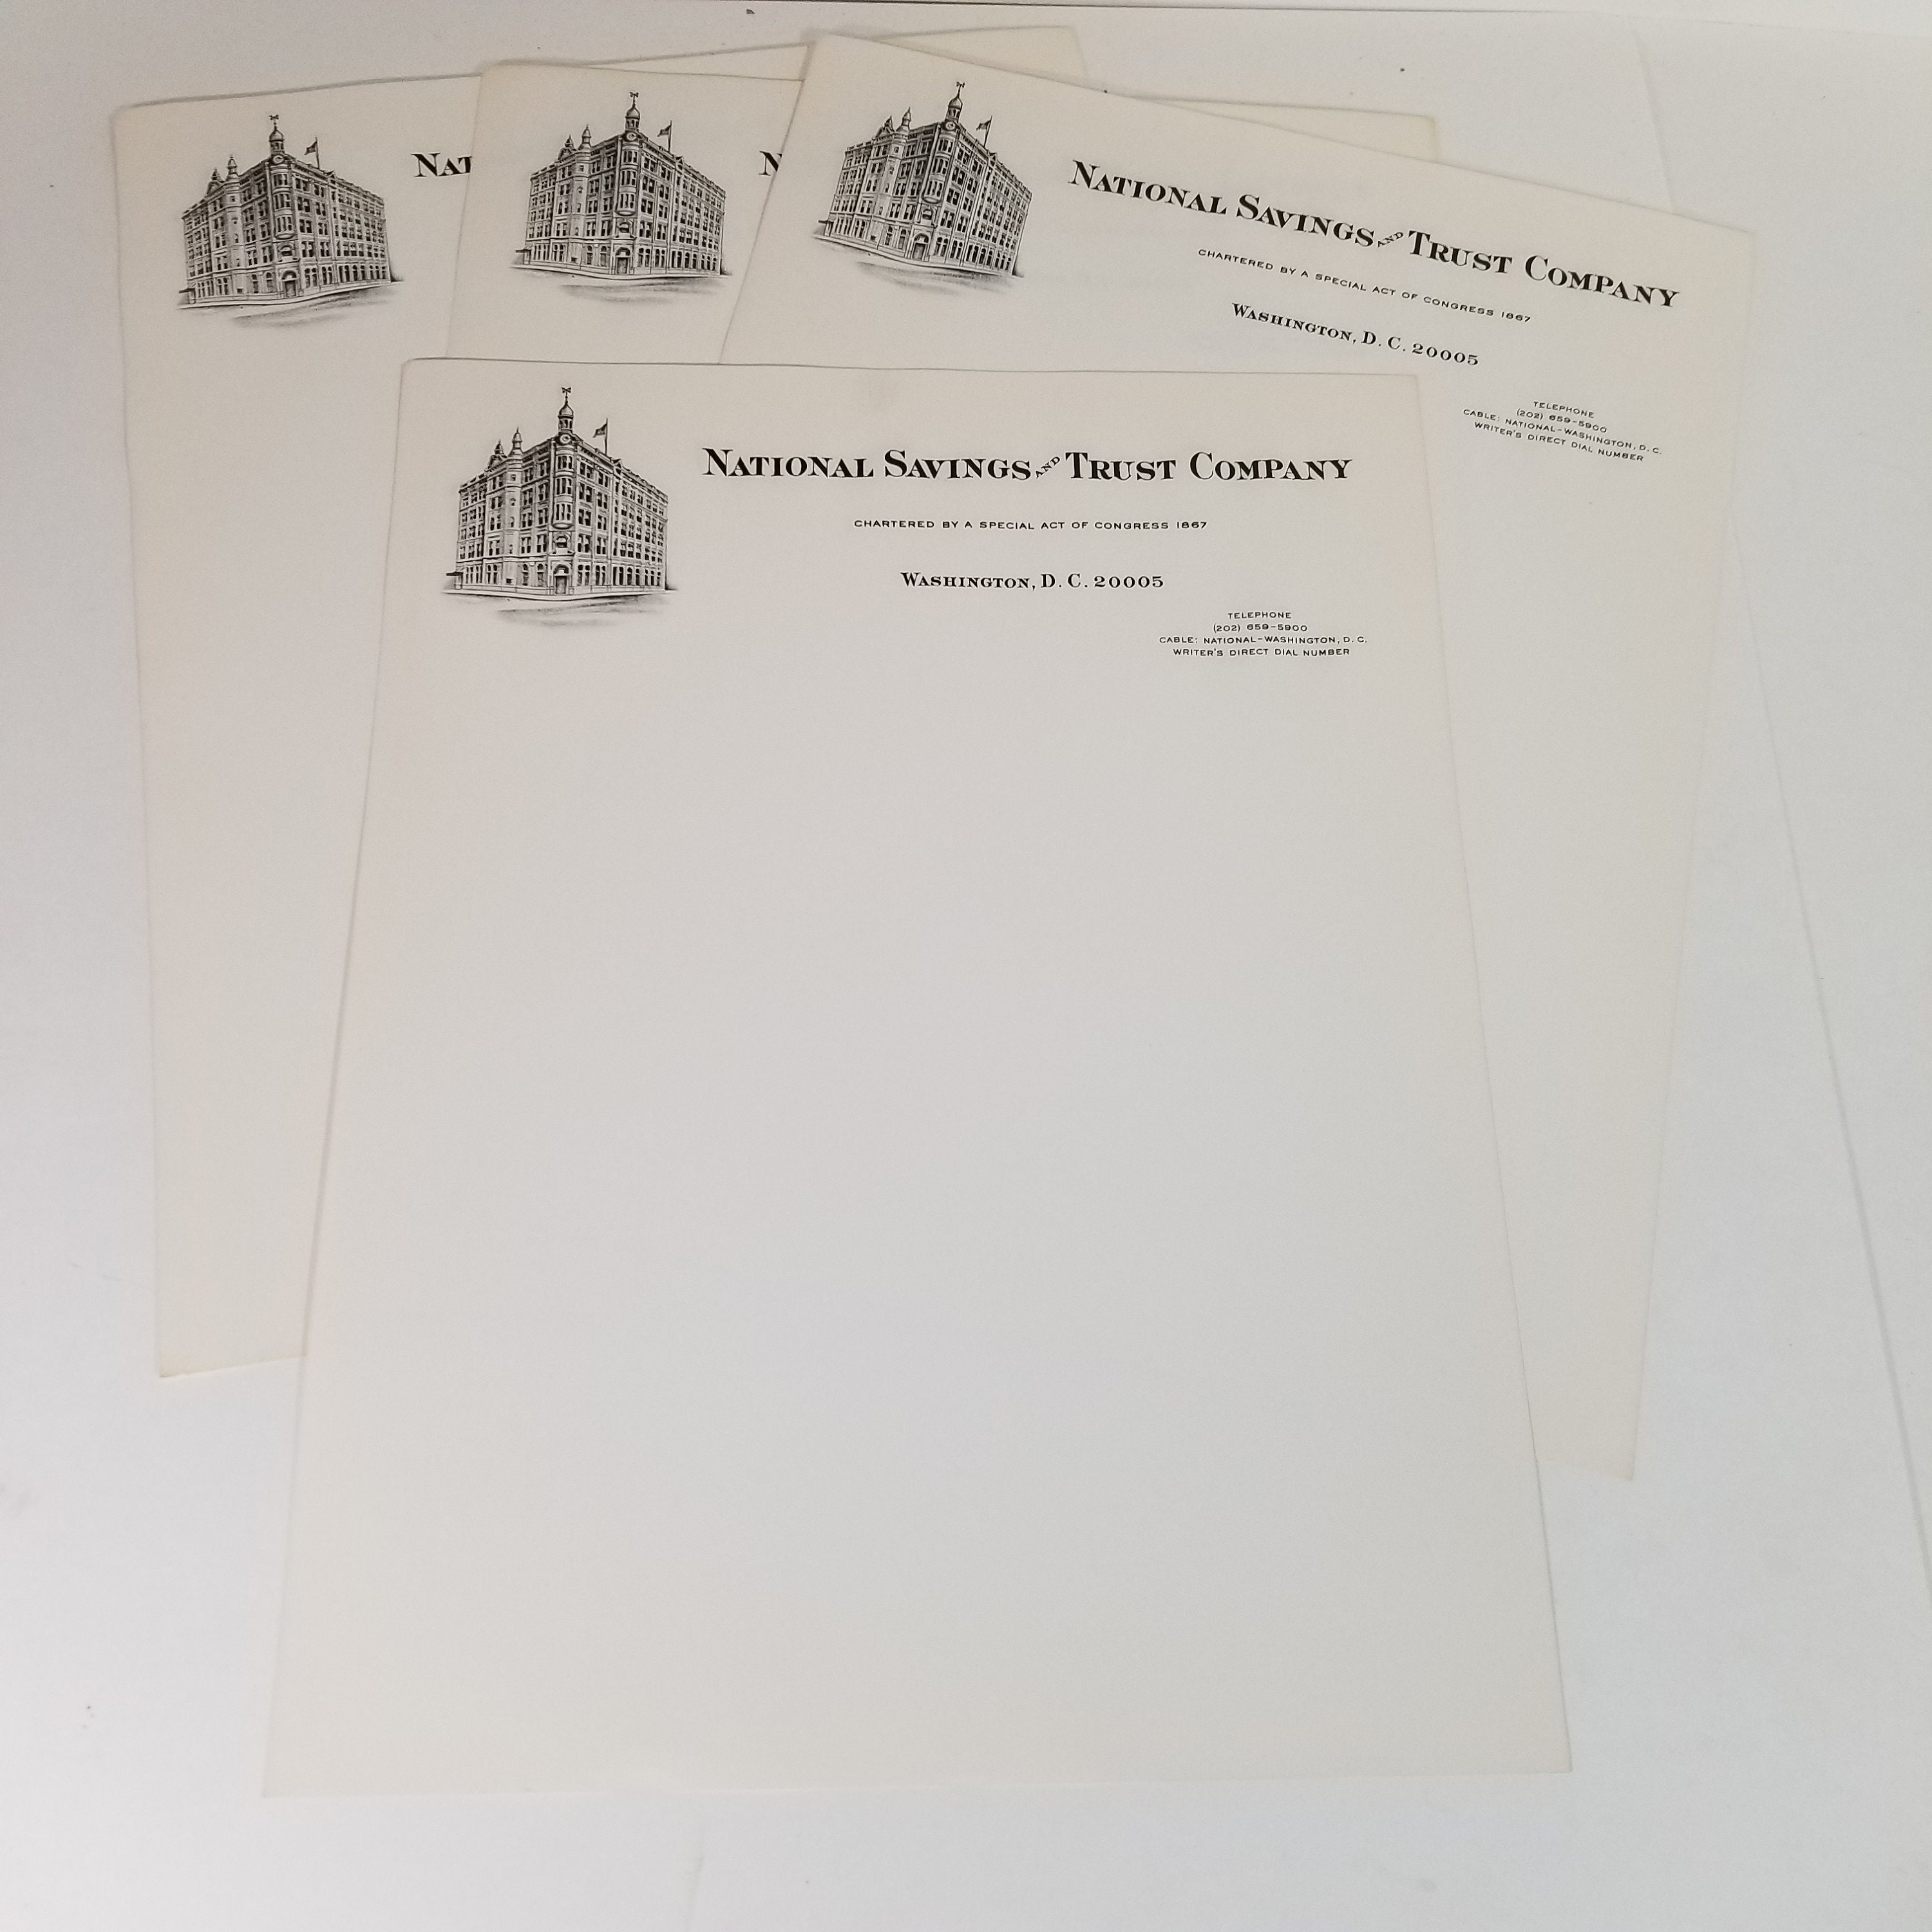 Mixed Sheets Unused Vintage Stationary,hotel stationary,ephemera  collectible